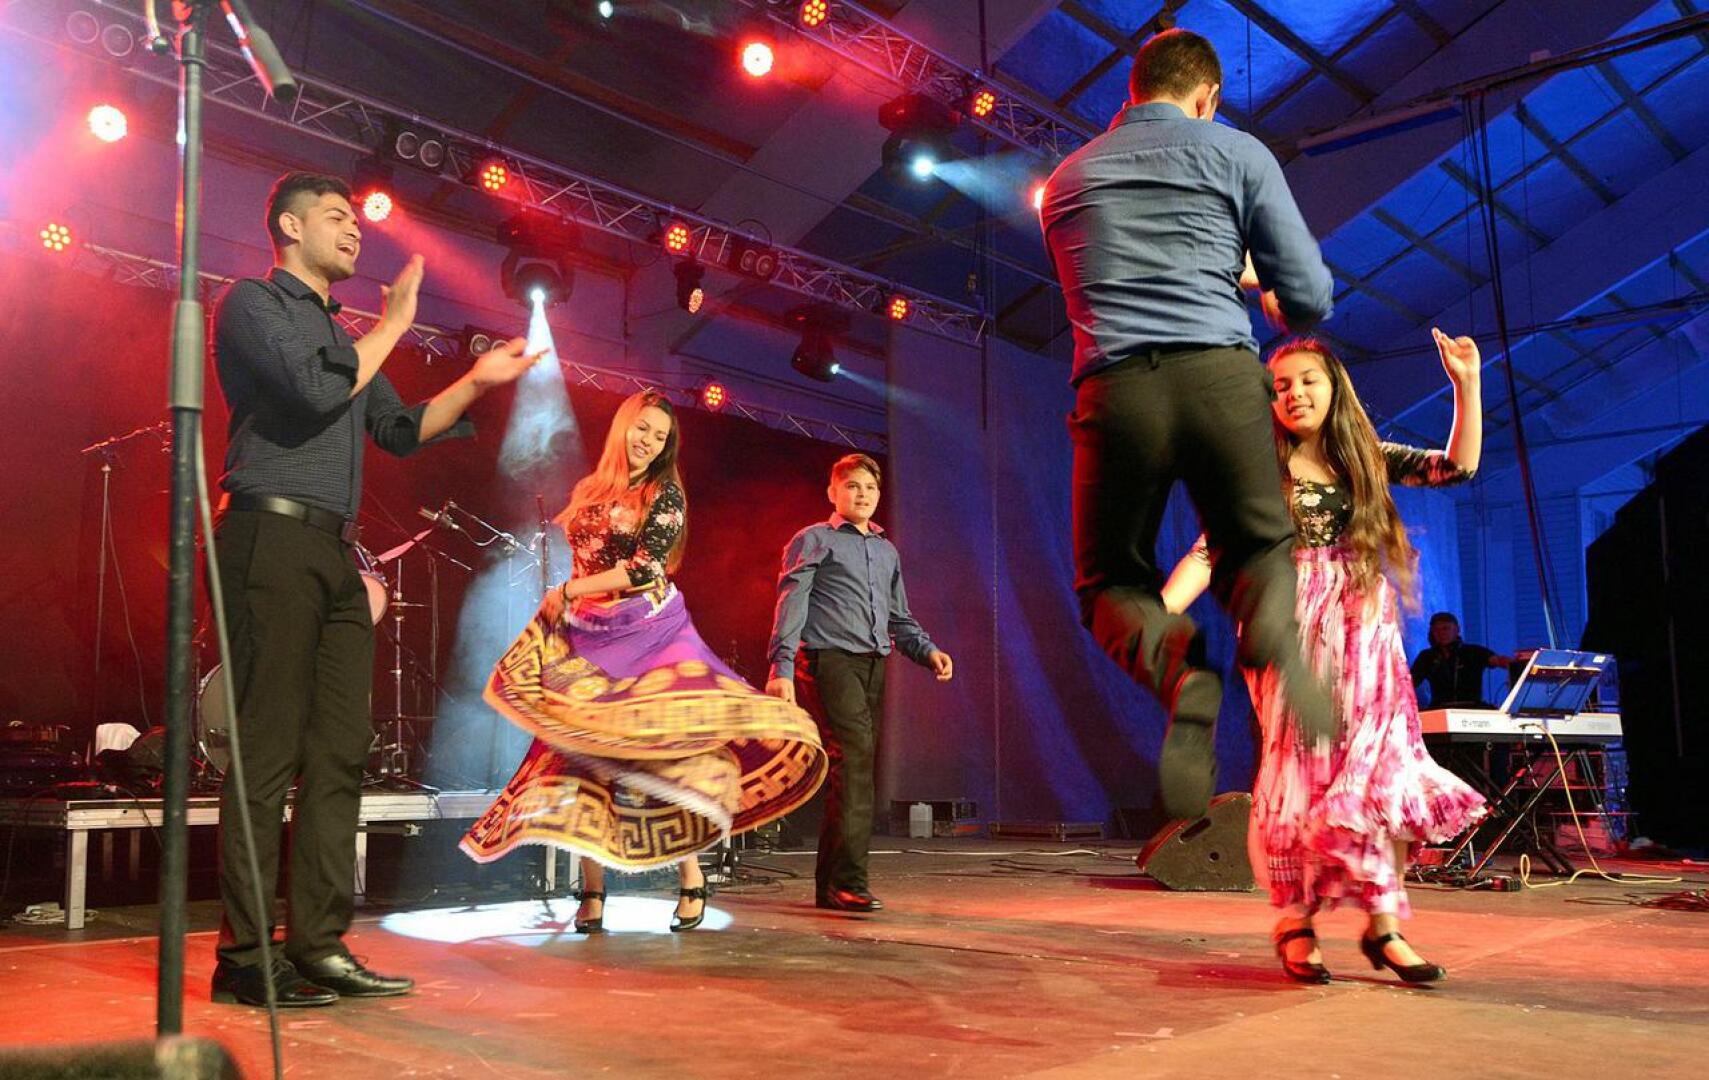 Unkarilainen tanssiryhmä Feher Liliom esiintyi viime vuonna Nivala Areenan yhteydessä pidetyssä kansalaisjuhlassa.